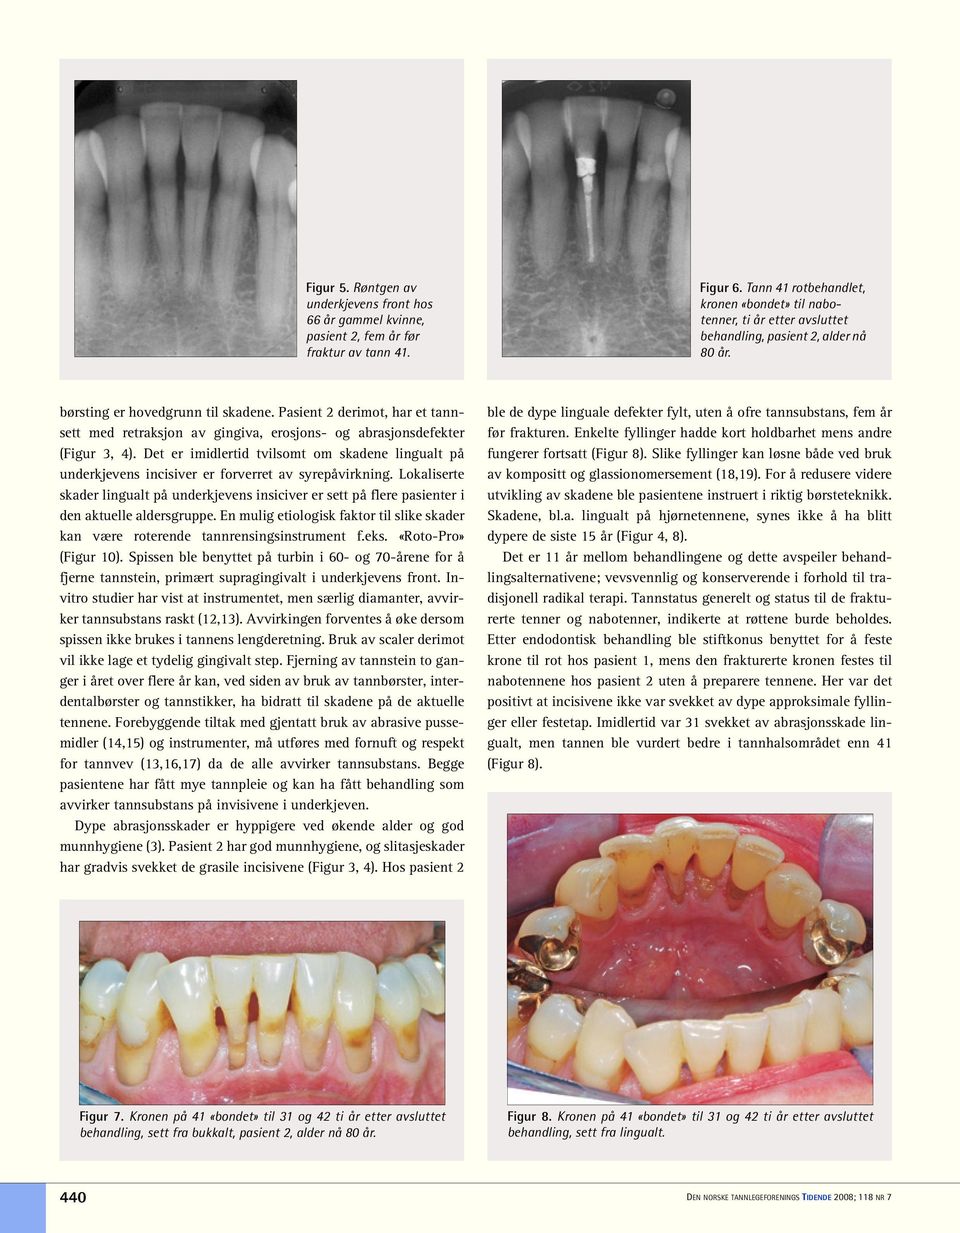 Pasient 2 derimot, har et tannsett med retraksjon av gingiva, erosjons- og abrasjonsdefekter (Figur 3, 4).